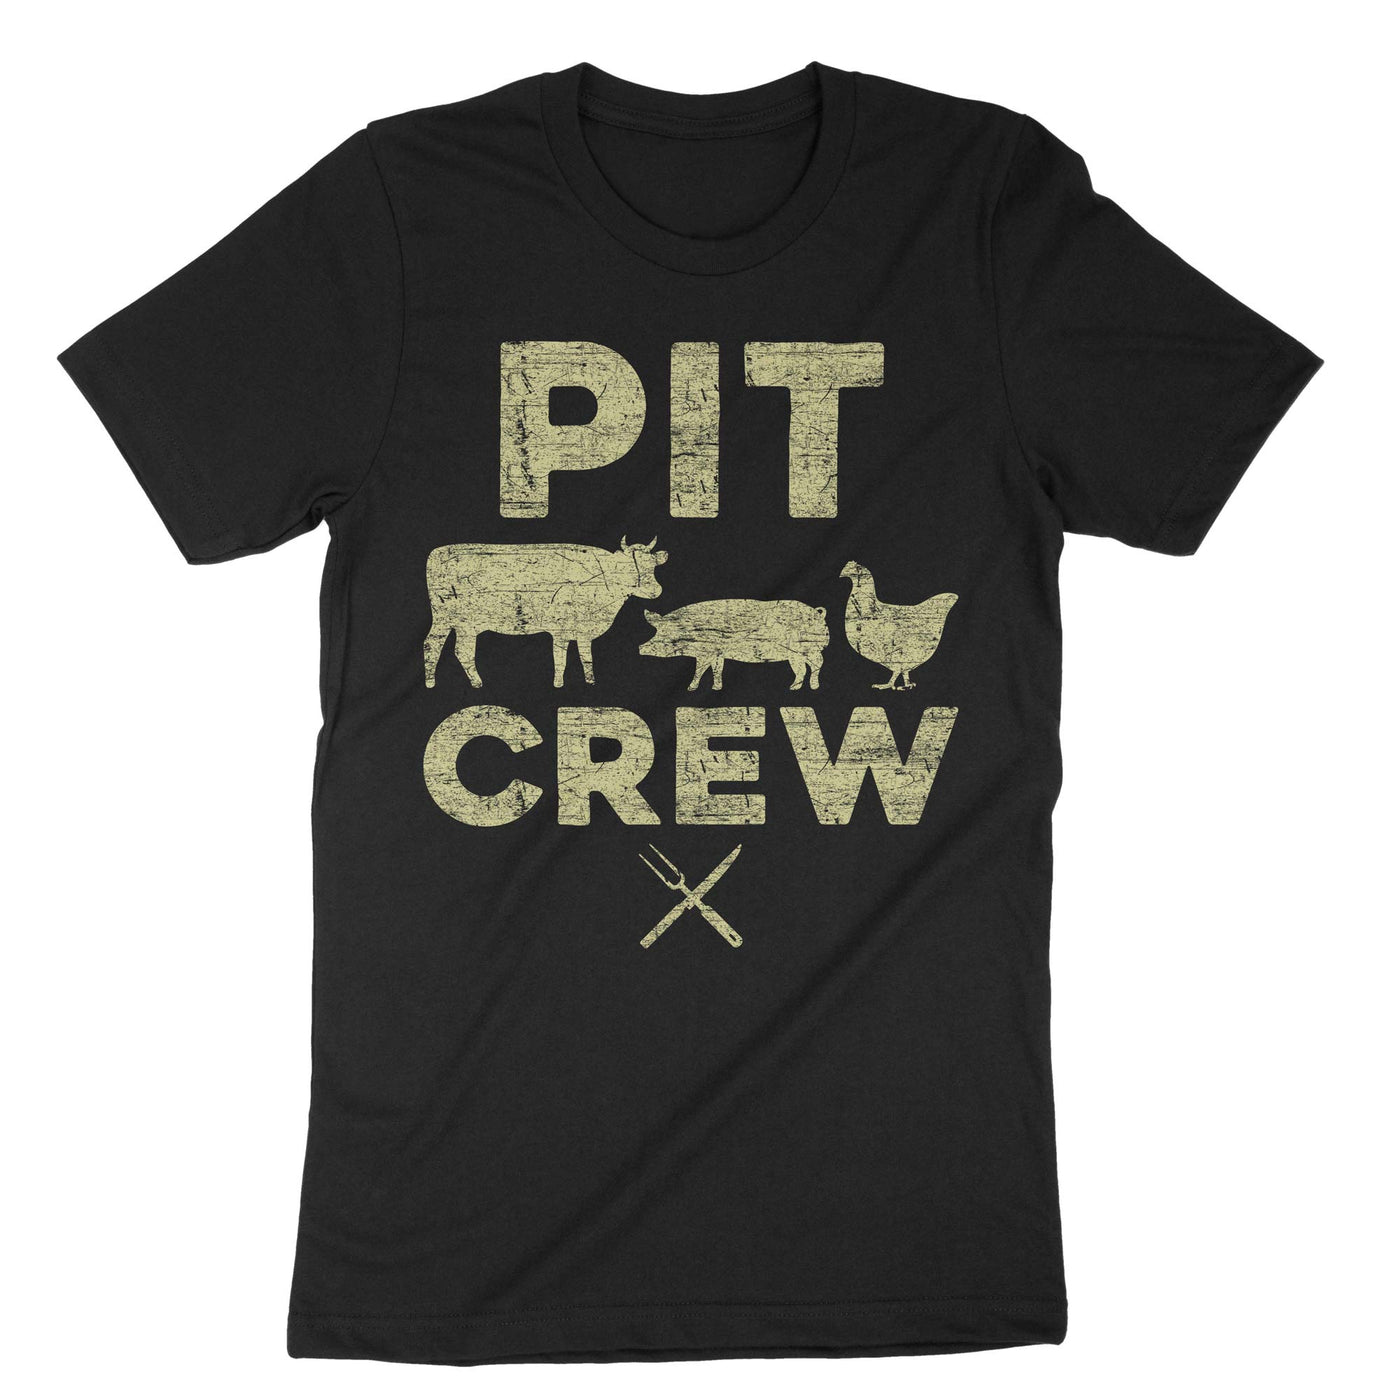 Black Pit Crew T-Shirt#color_black